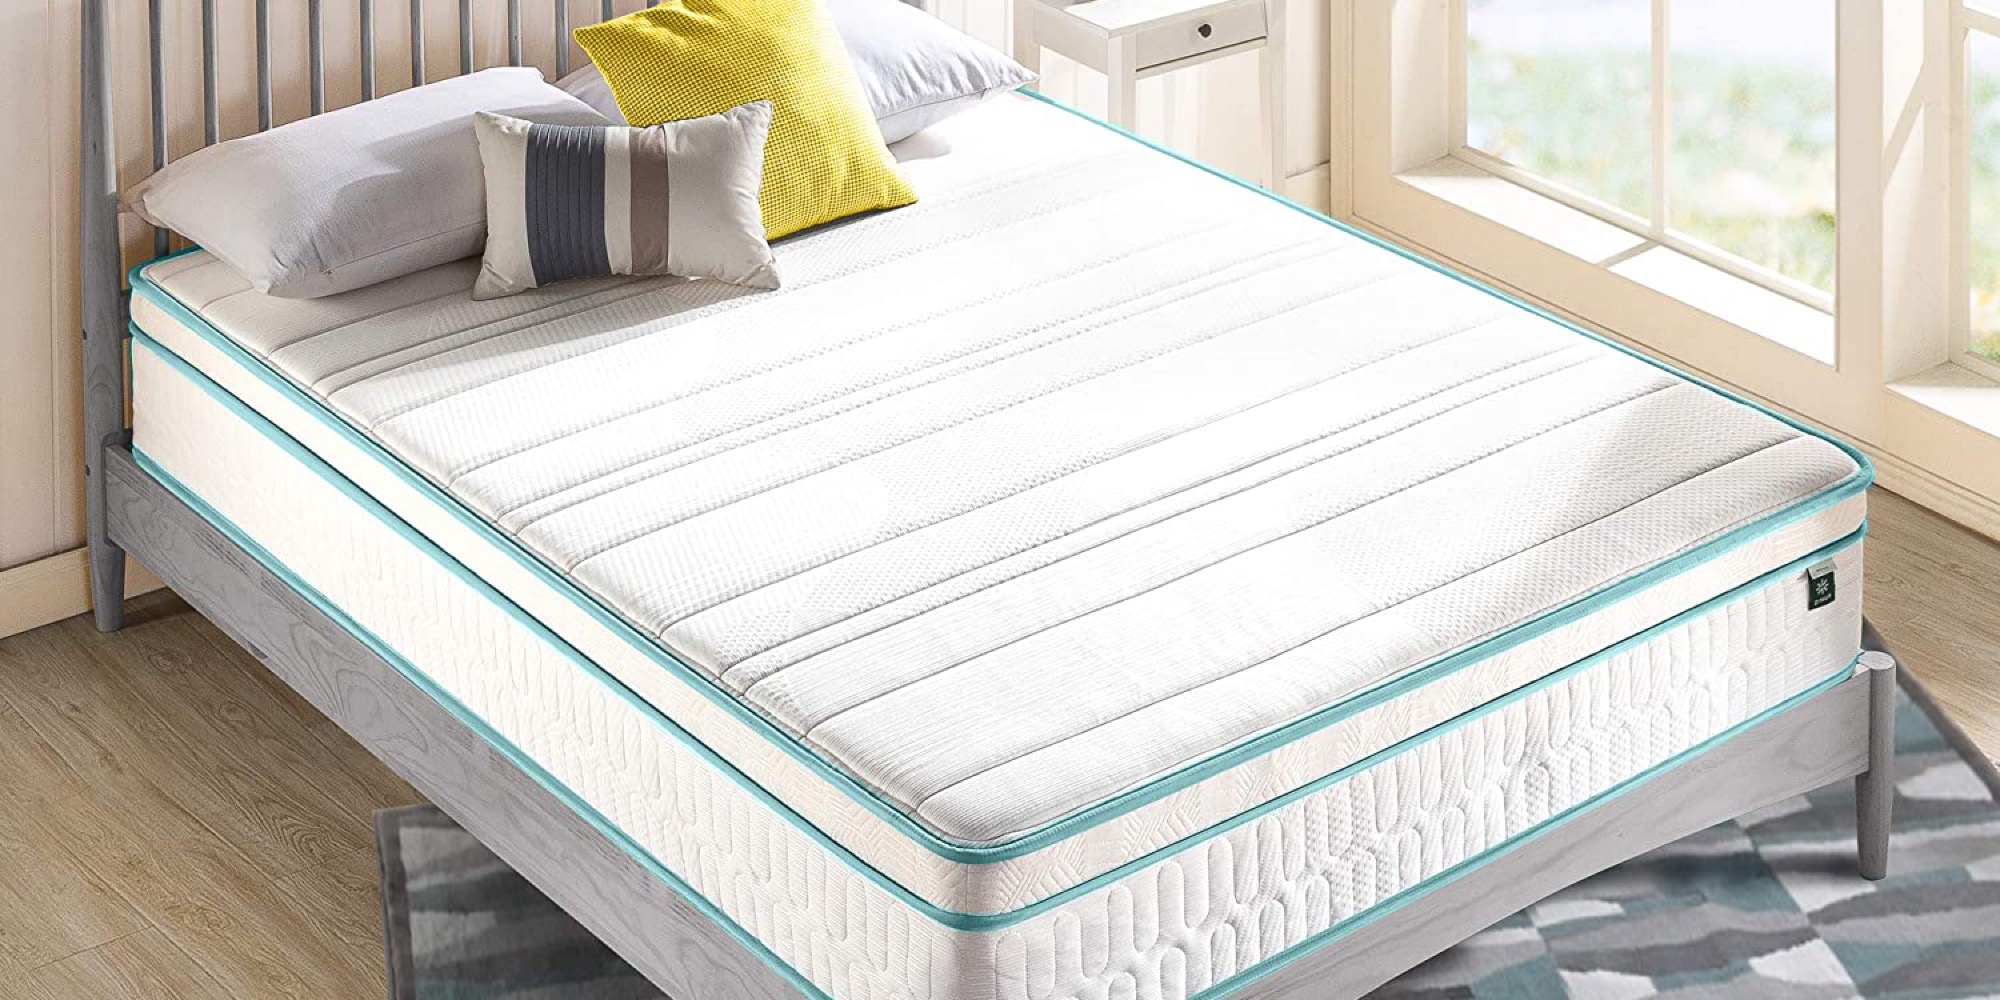 zinus 12 inch hybrid mattress